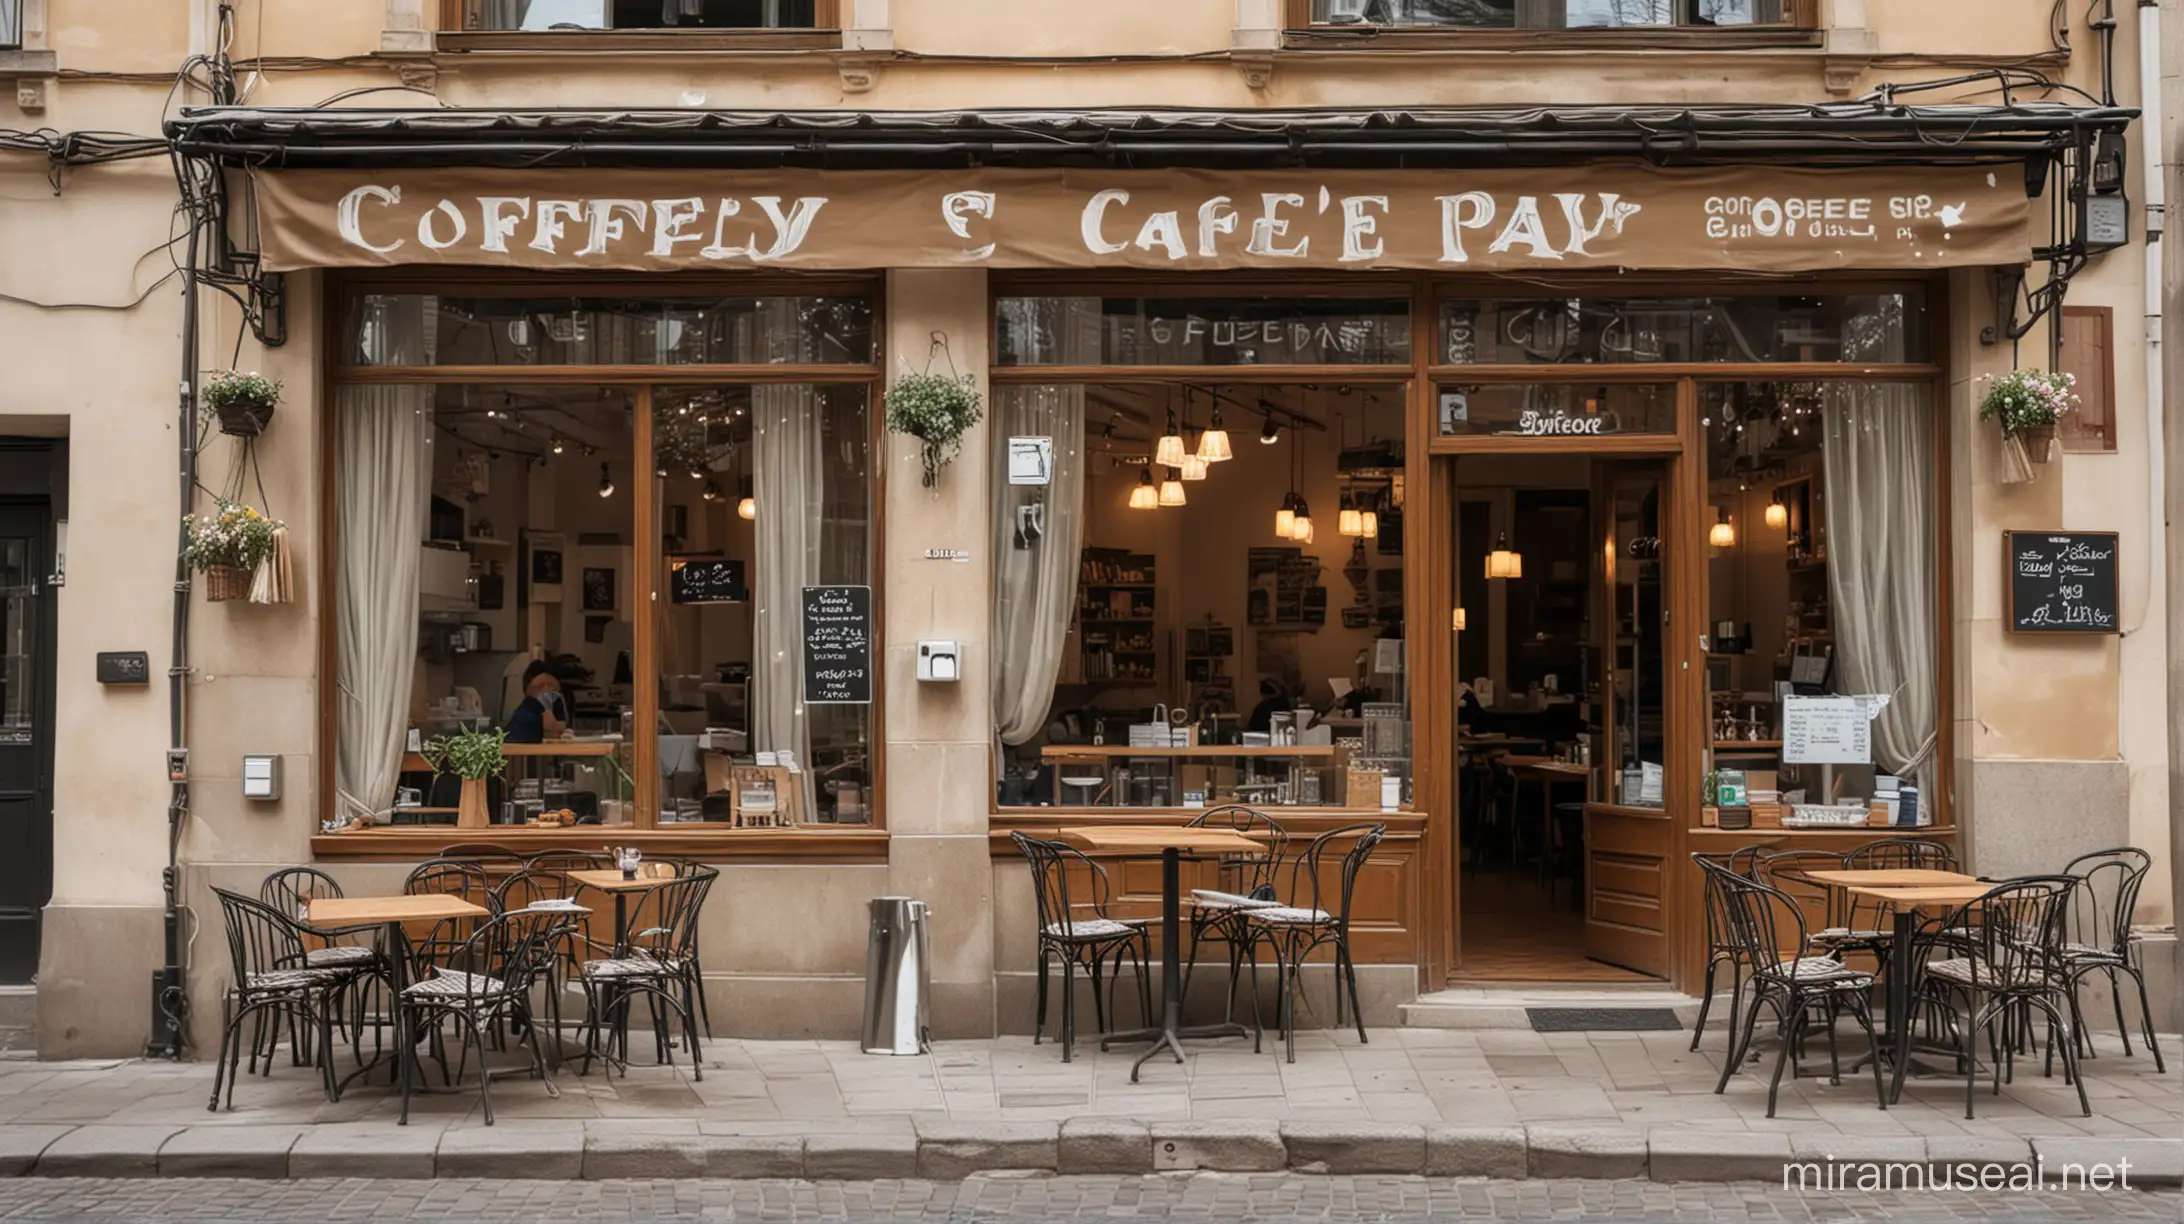 Небольшое кафе в центре города с красивой отделкой и интерьером с большими окнами и вывеской сверху: "КофеПей"